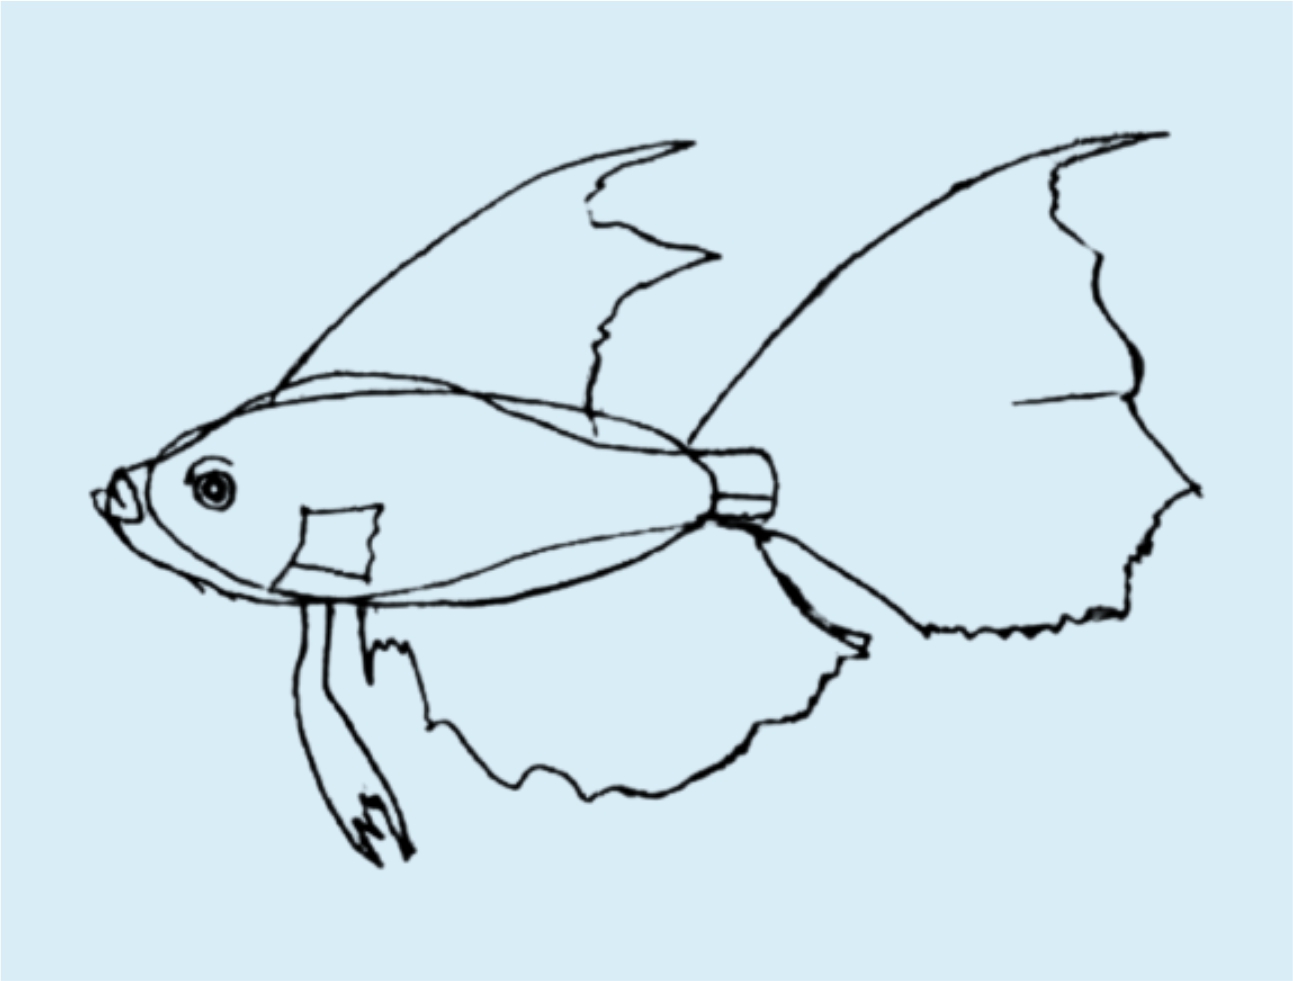 Урок рисования: Как нарисовать рыбу поэтапно карандашом